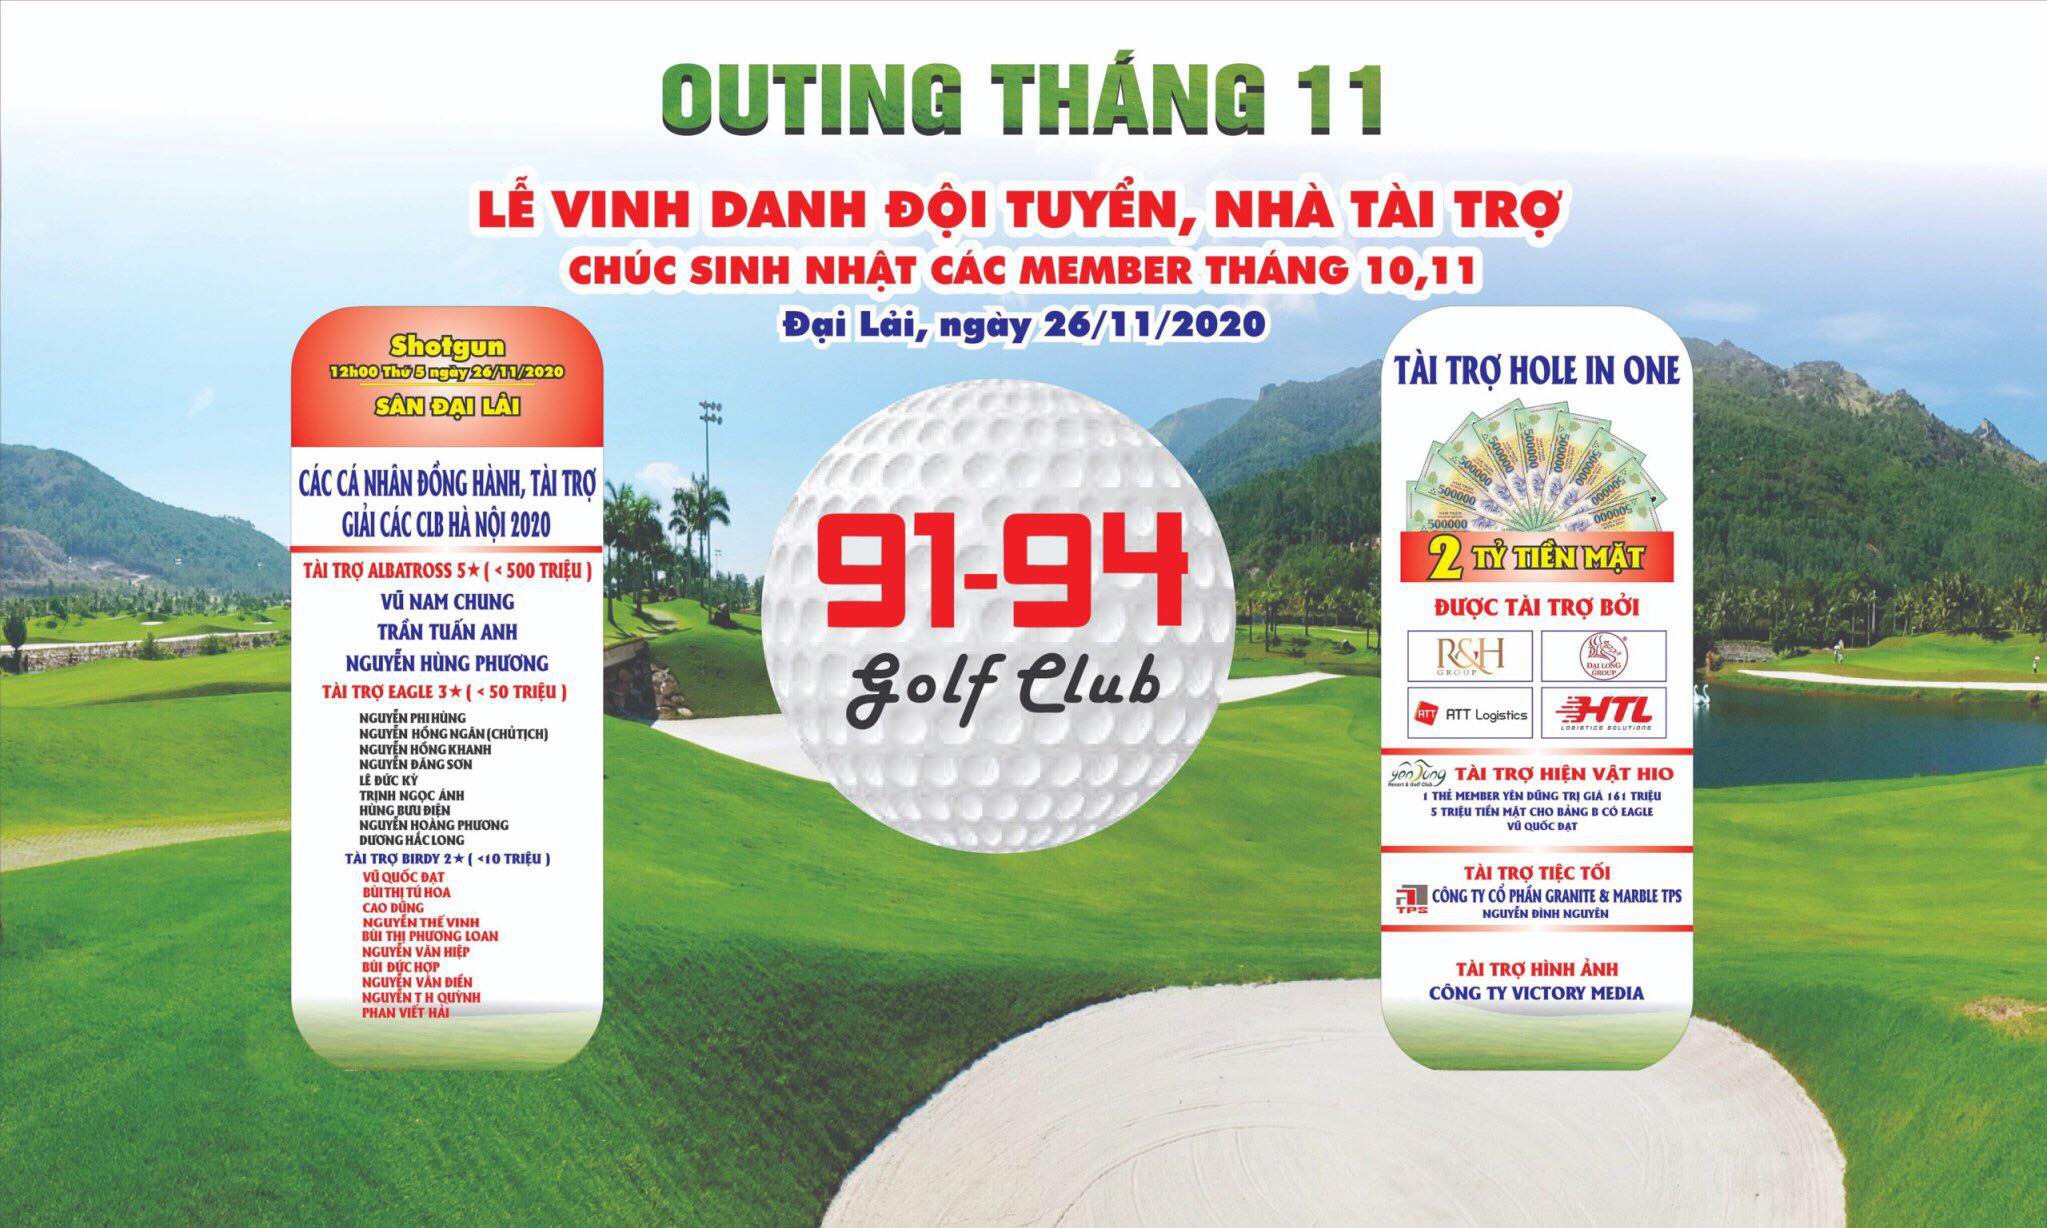 CLB Golf 91-94 tưng bừng tổ chức giải Outing tháng 11